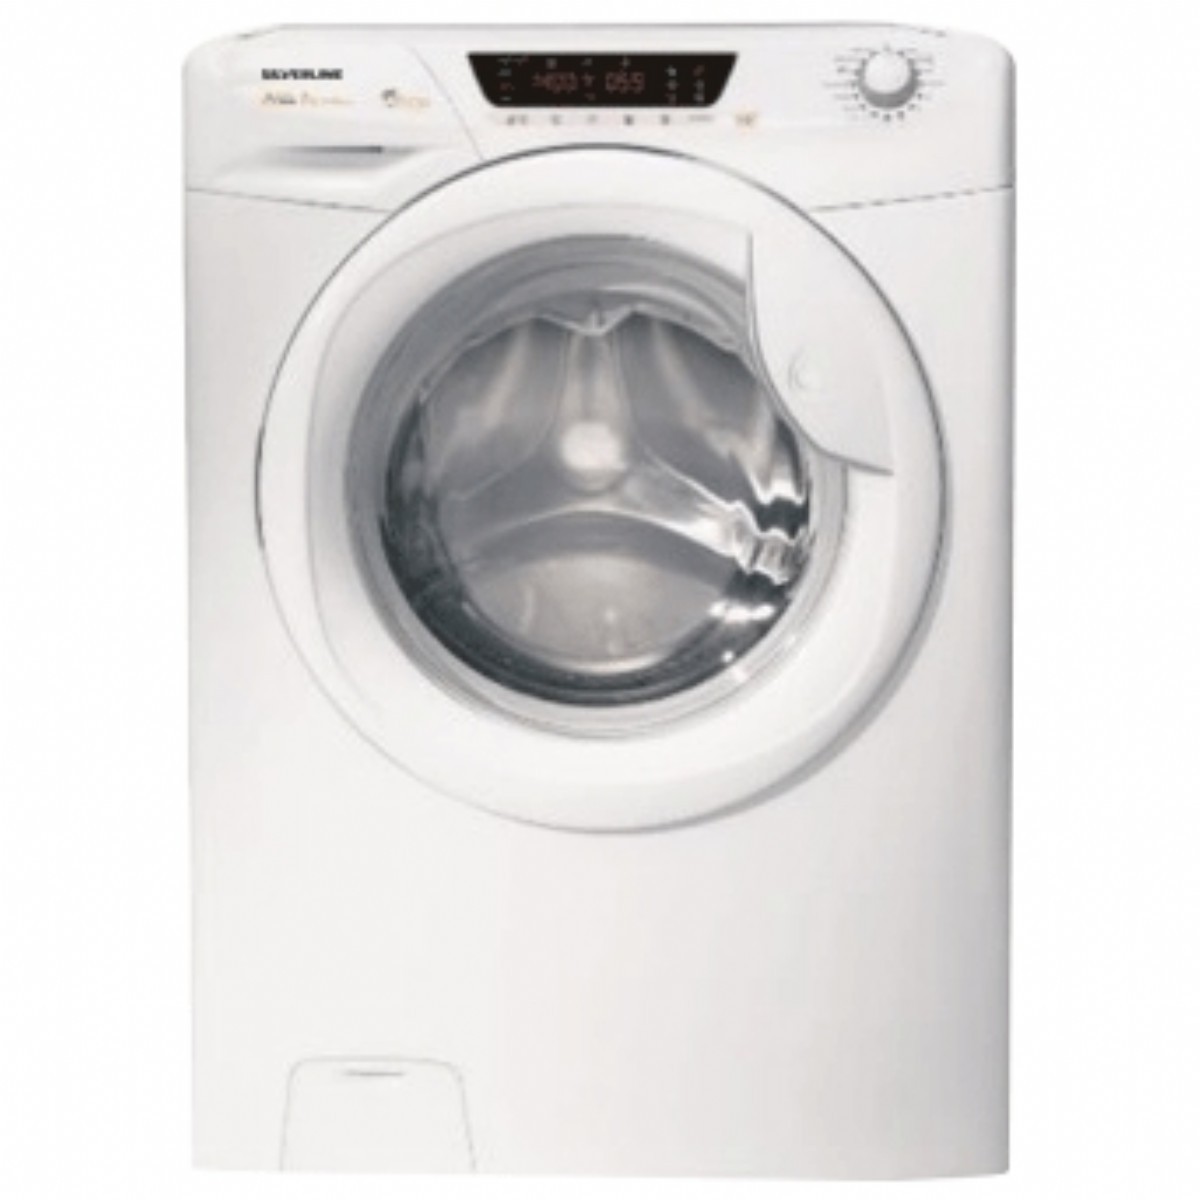 Çamaşır Kurutma Makineleri | Silverline DM54004W01 B Enerji 9 kg Çamaşır Kurutma Makinesi | DM54004W01 | Silverline DM54004W01 9 kg Çamaşır Kurutma Makinesi  | 